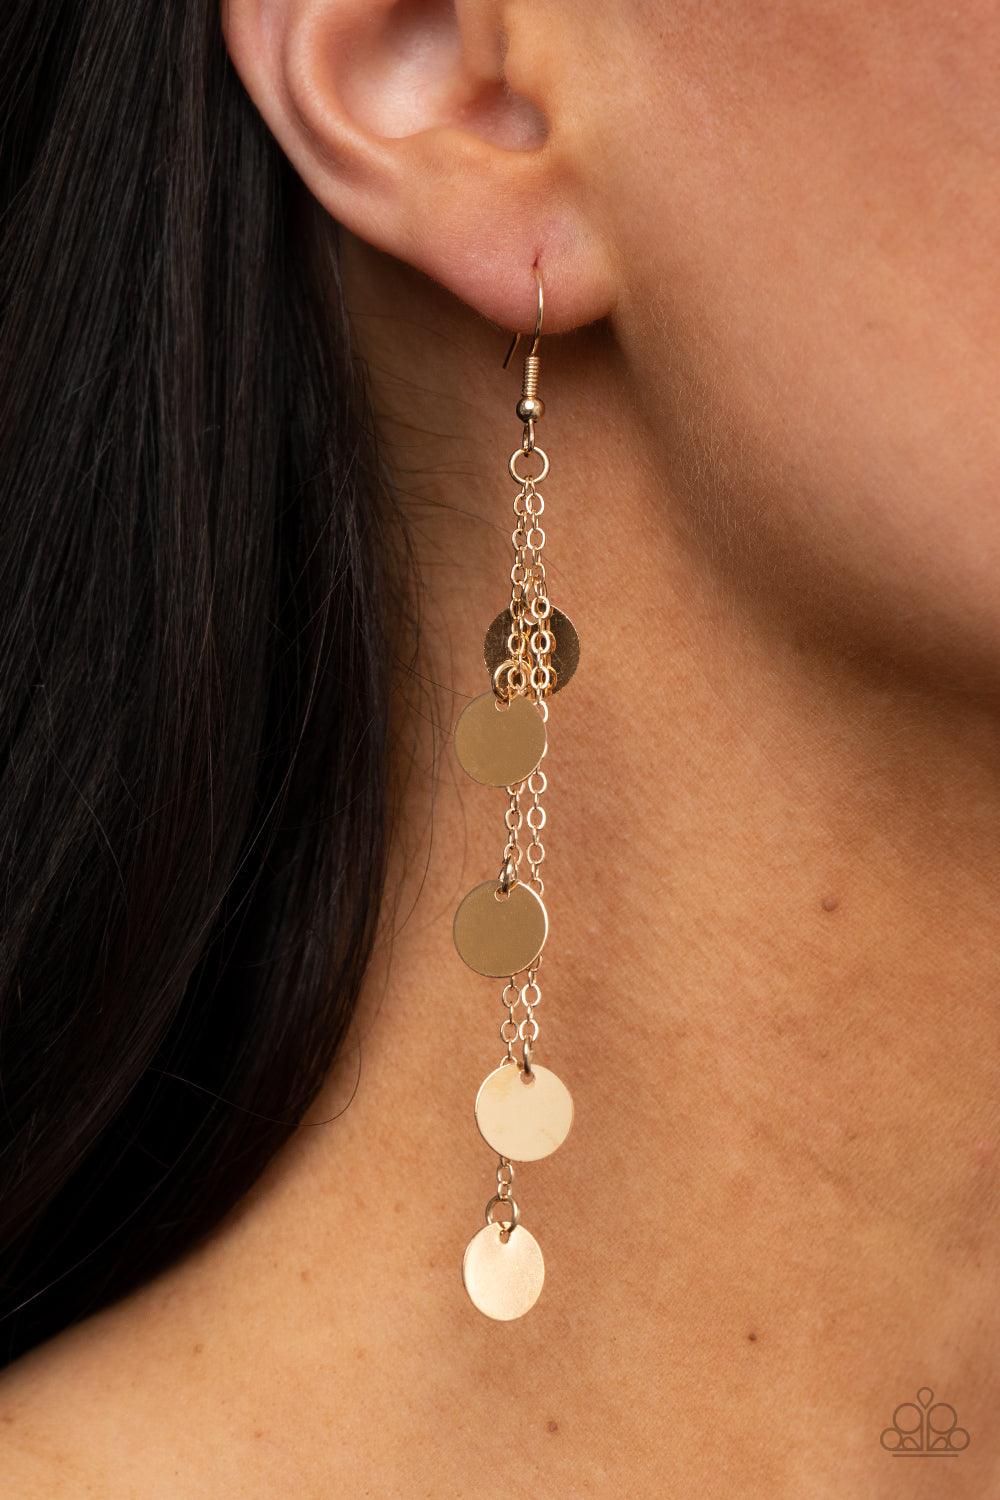 Take A Good Look - Gold Earrings - Jewelry by Bretta